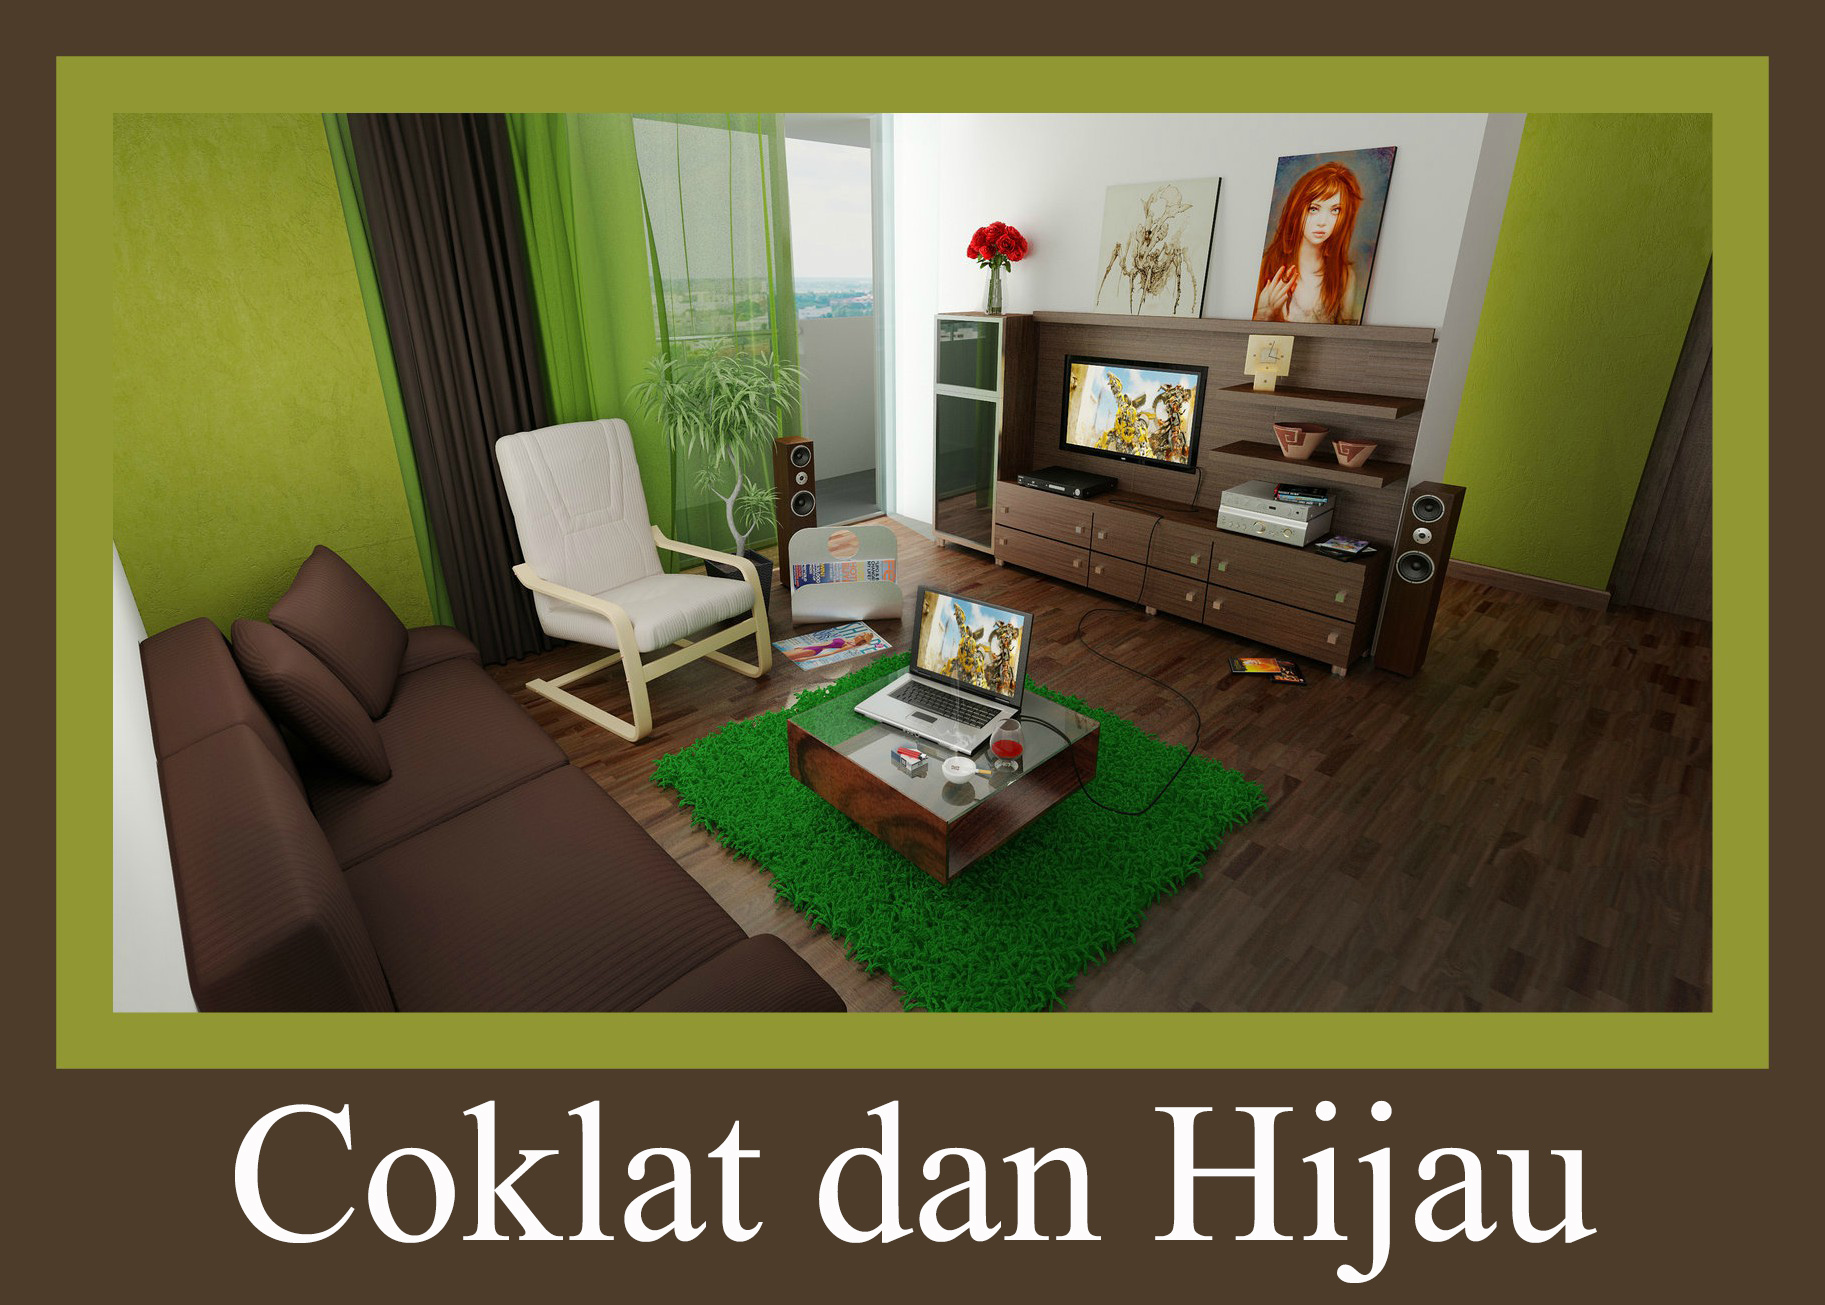 tapete warna coklat,wohnzimmer,zimmer,möbel,grün,innenarchitektur